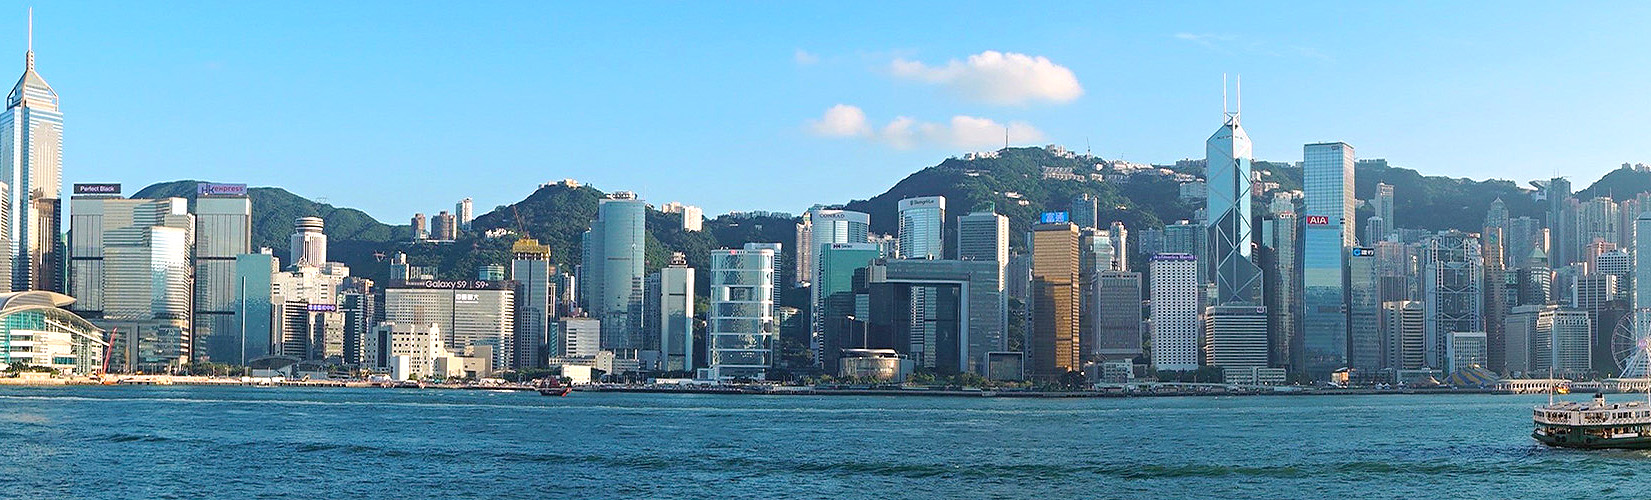 City of Hong Kong